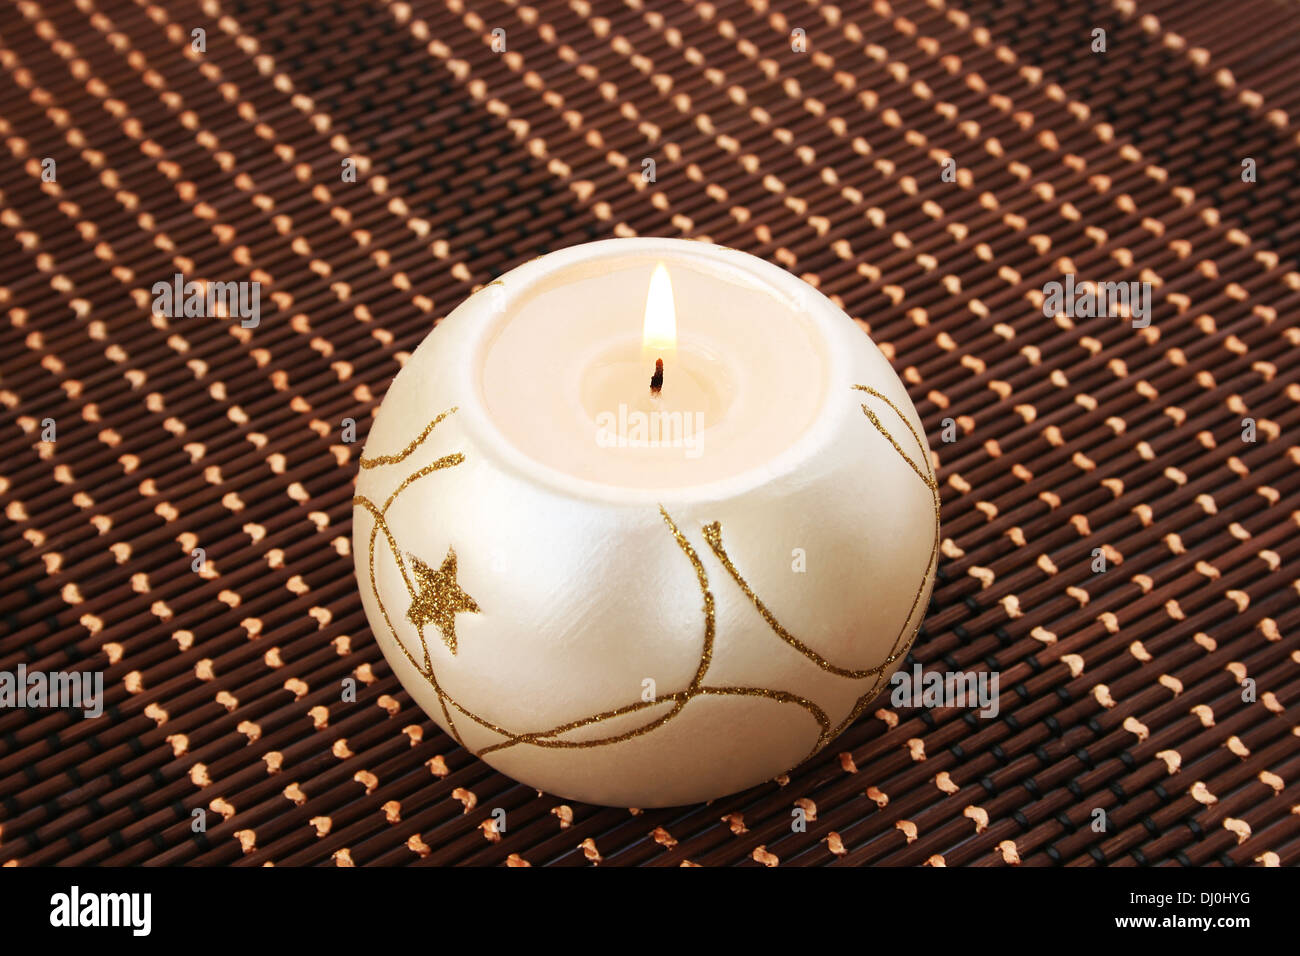 Burning candle isolated on bamboo background. Stock Photo